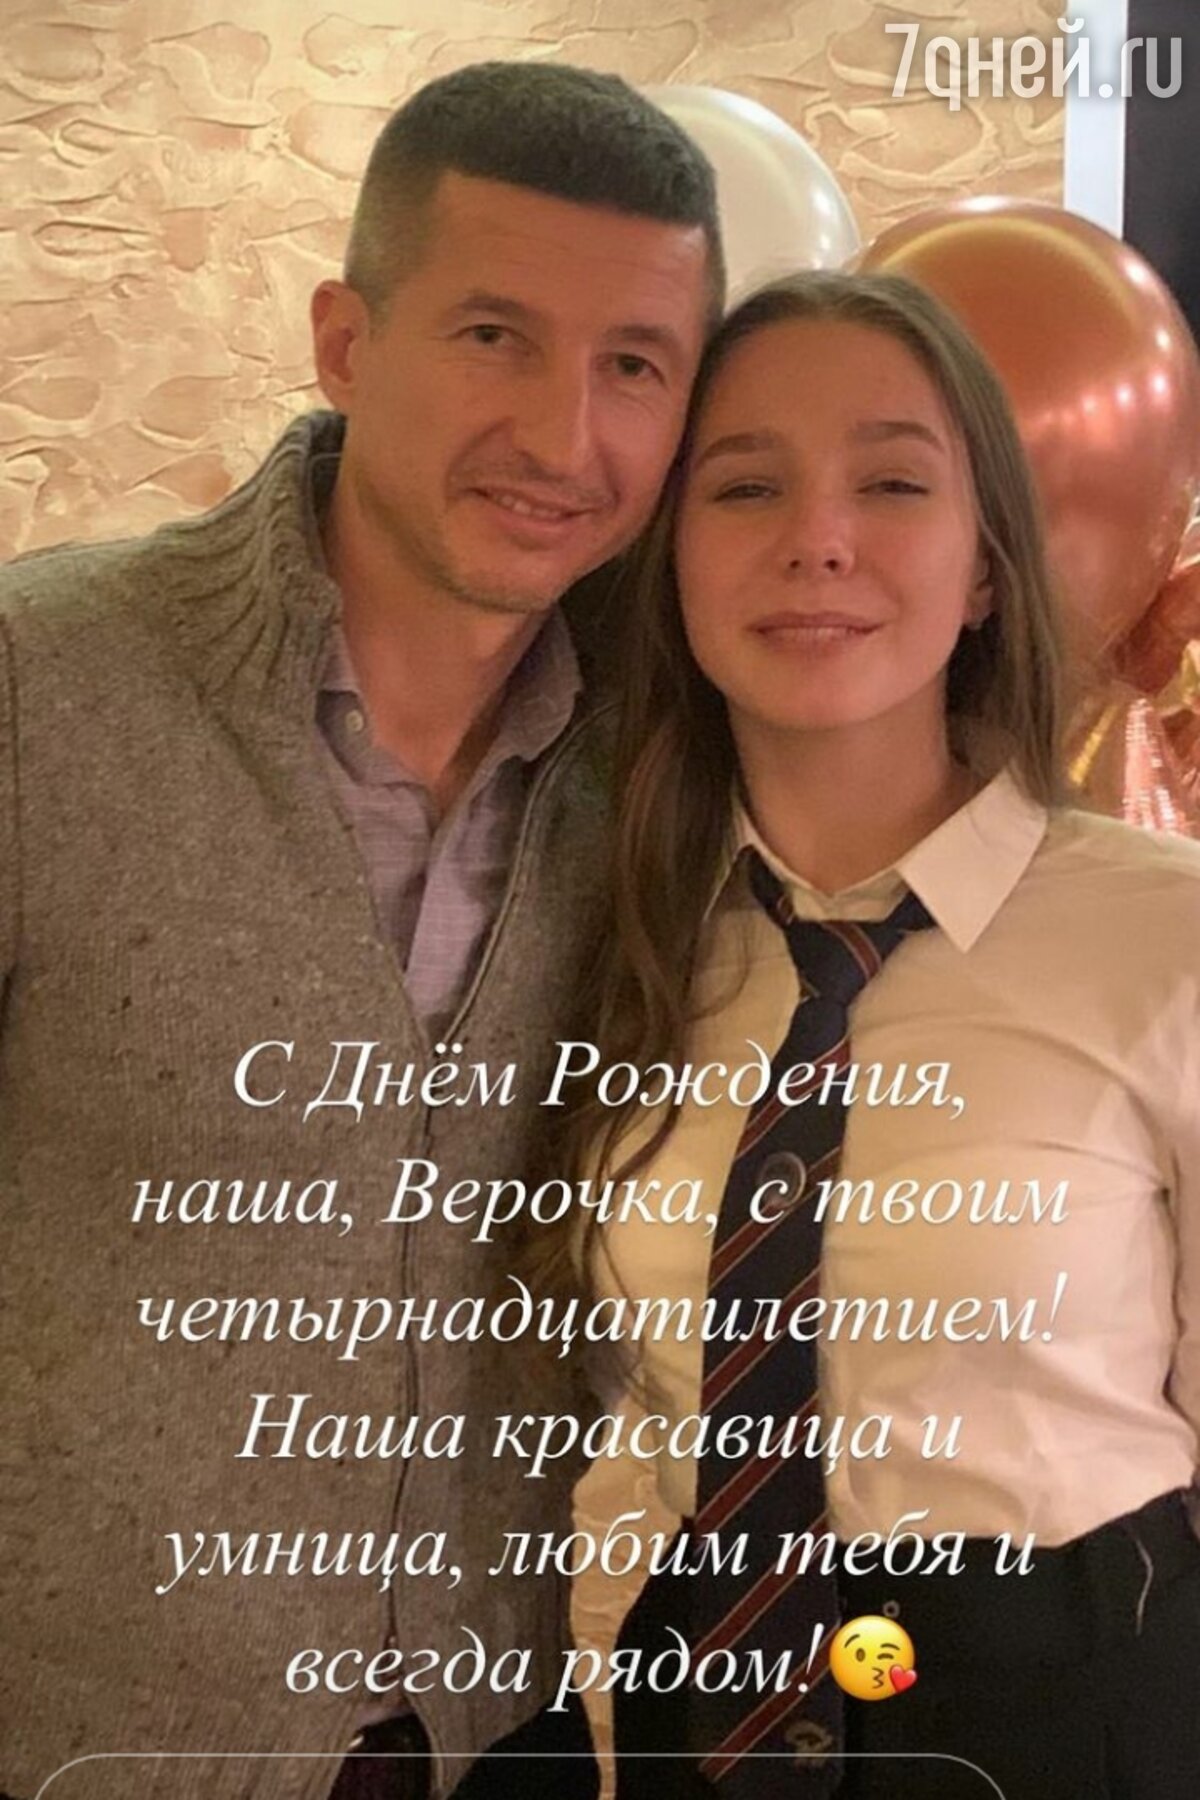 Дом Новости / Юлия Началова получила перед смертью подарок от дочери